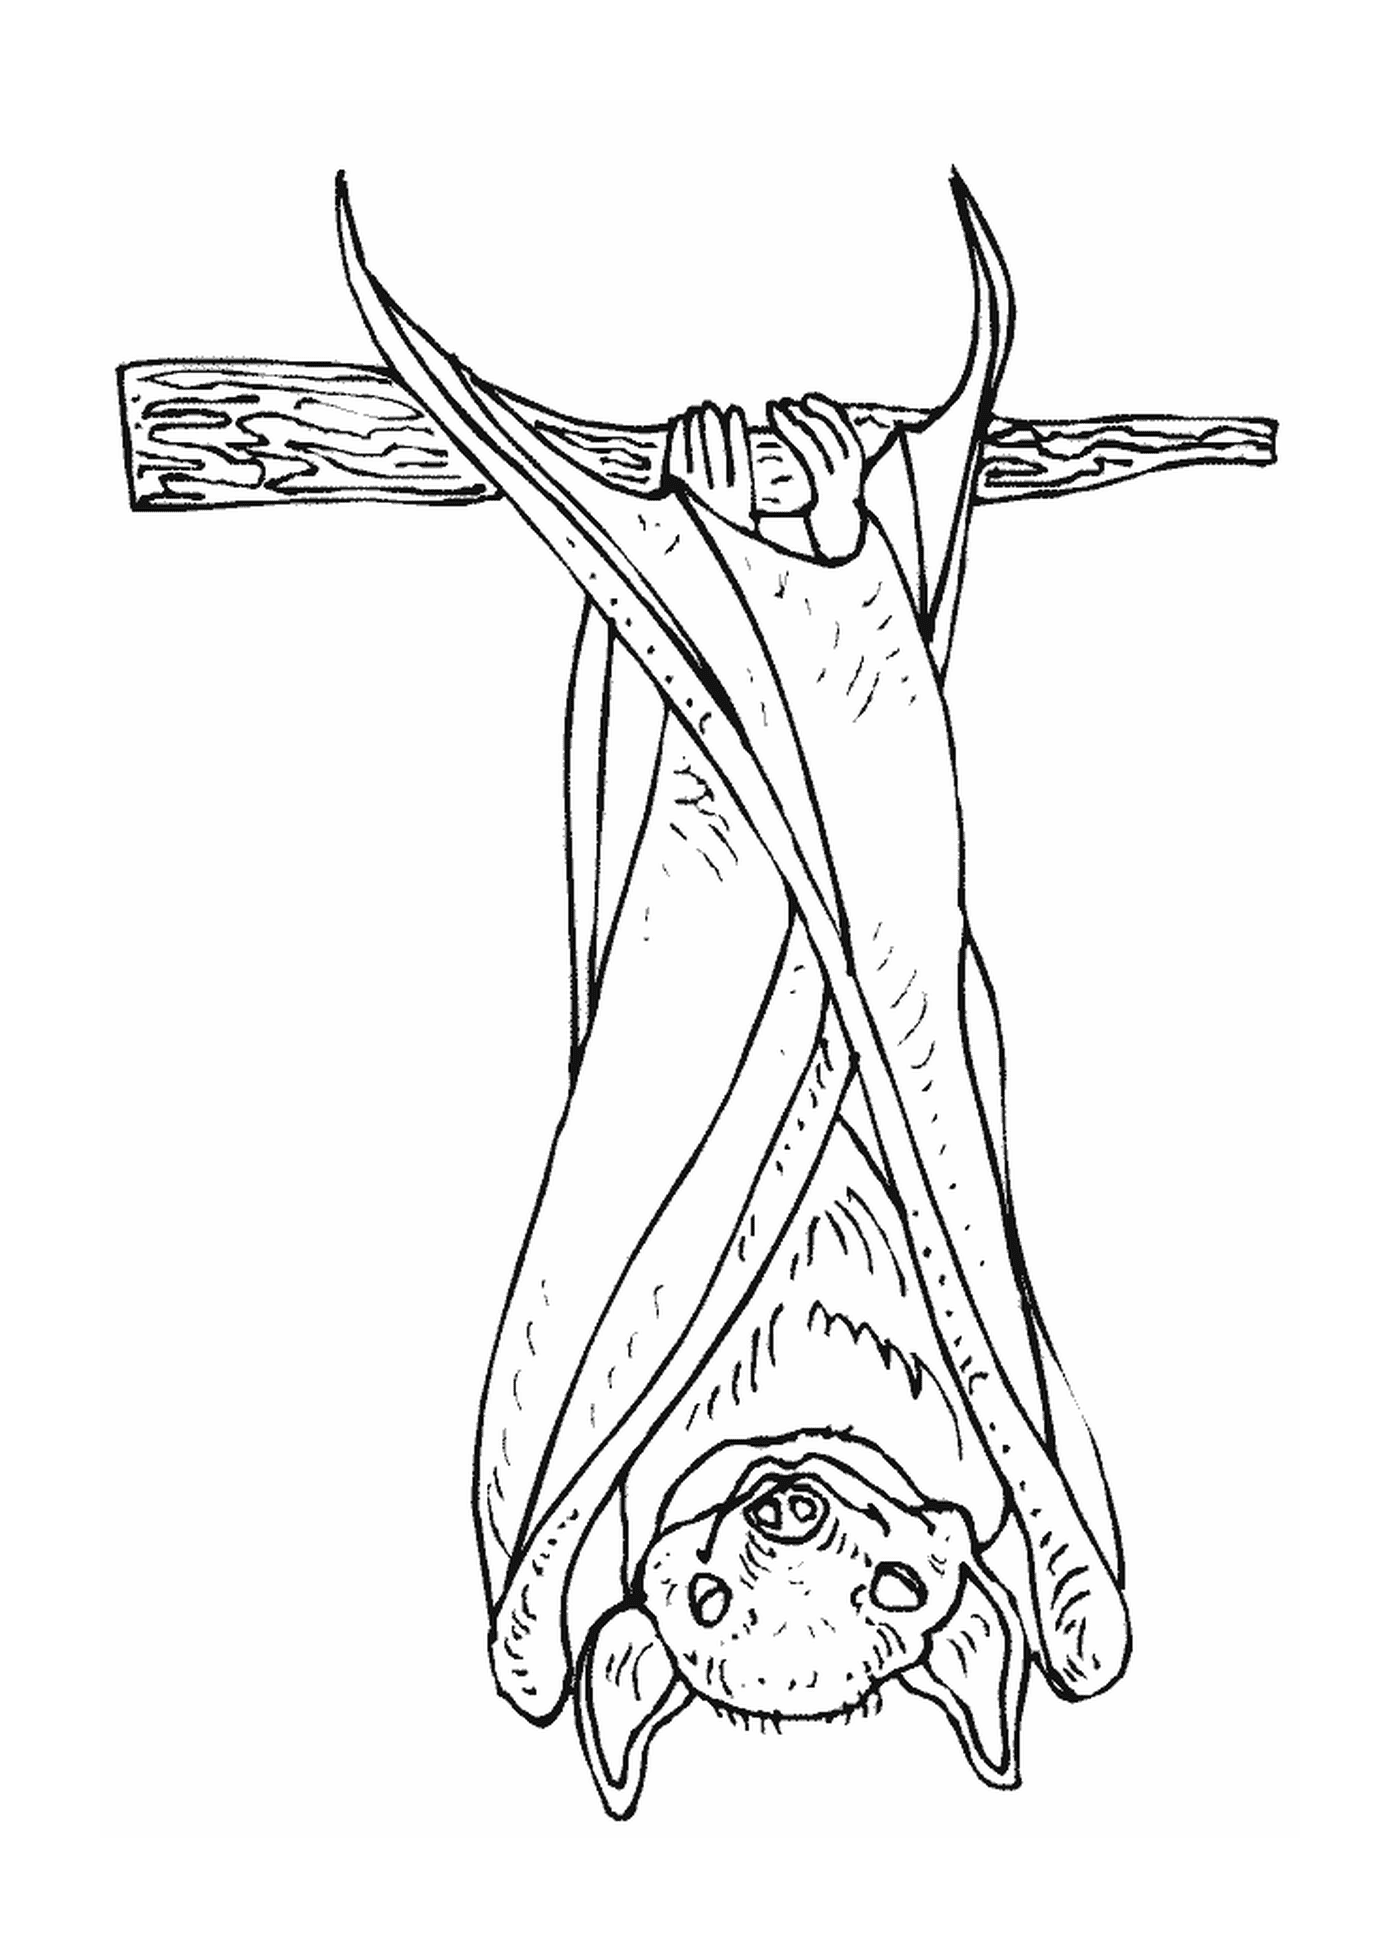  человек висит вверх ногами на кресте 